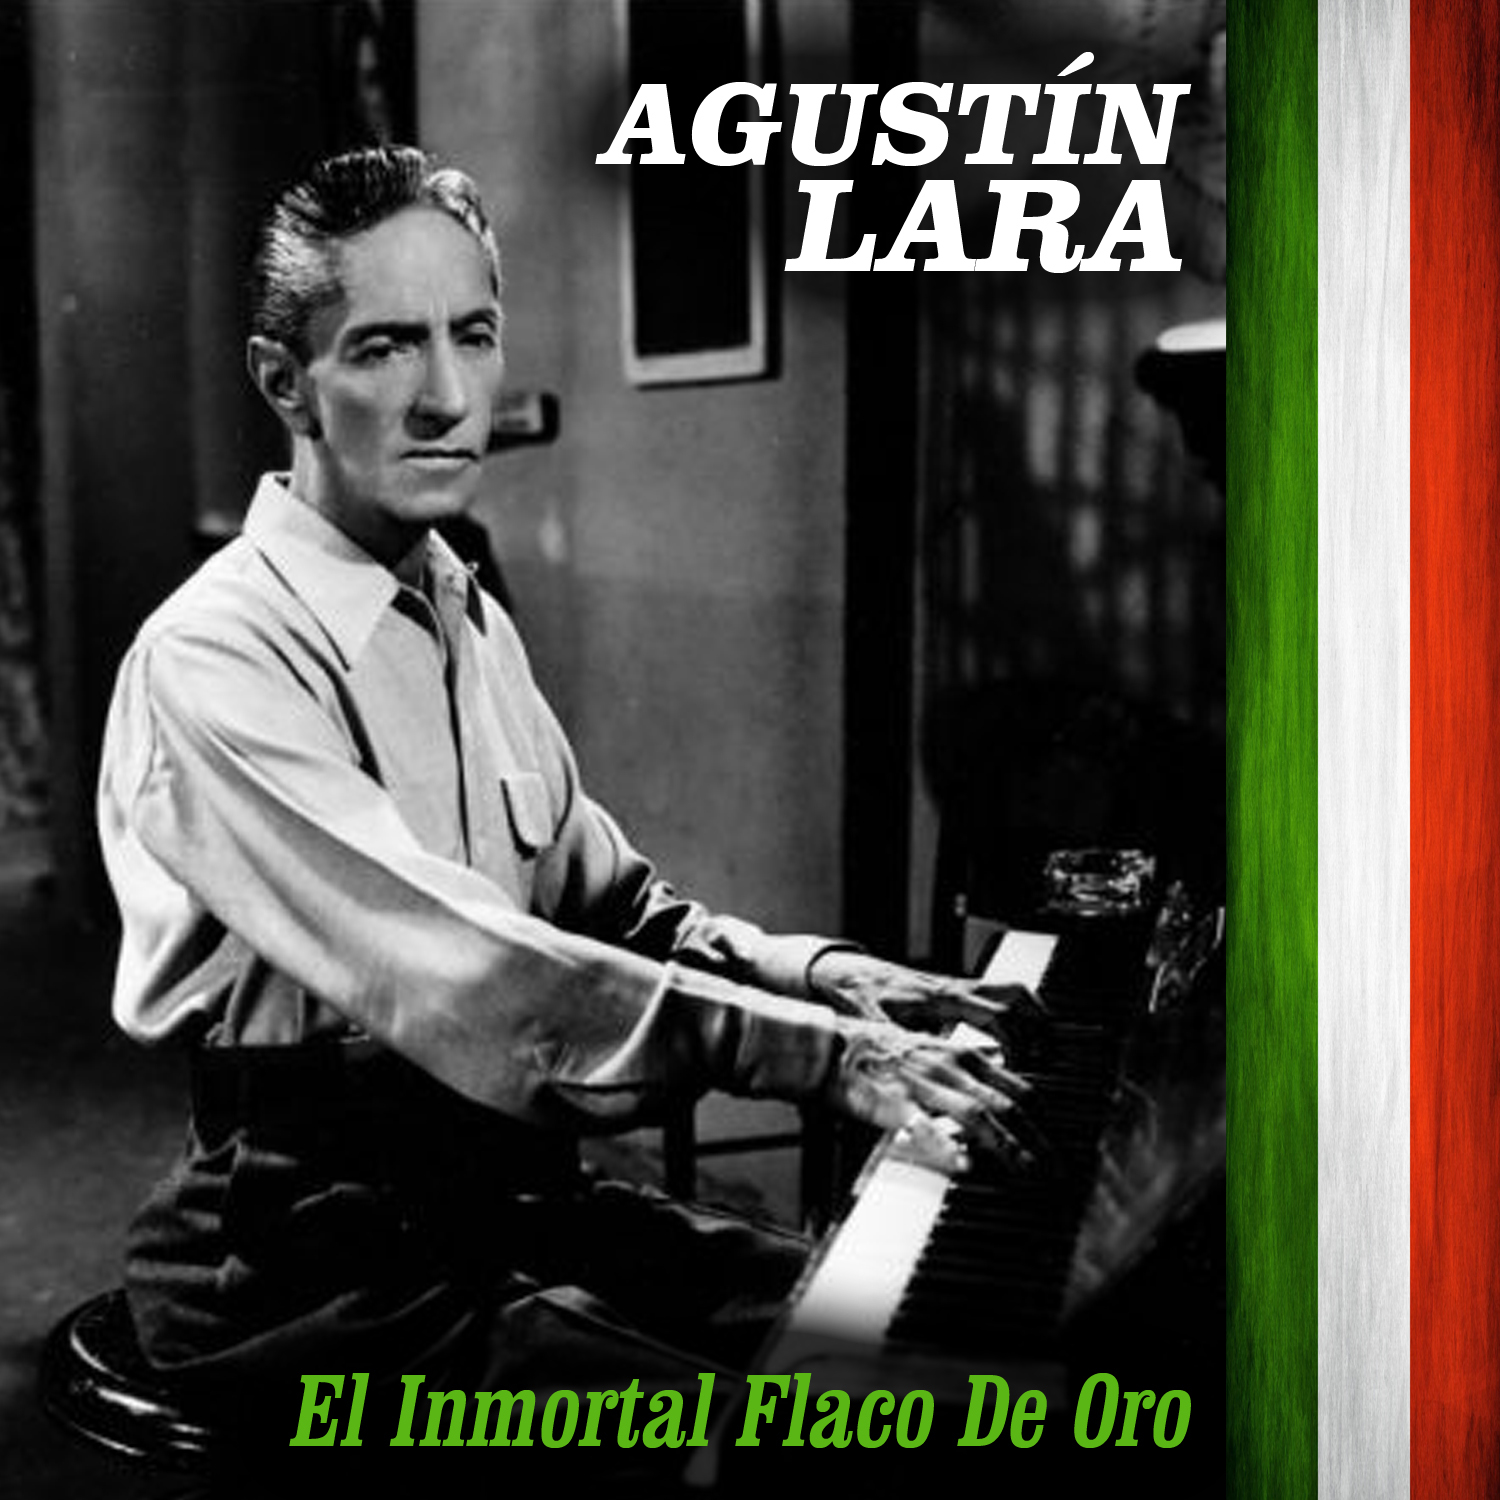 El Inmortal Flaco de Oro - Agustín Lara